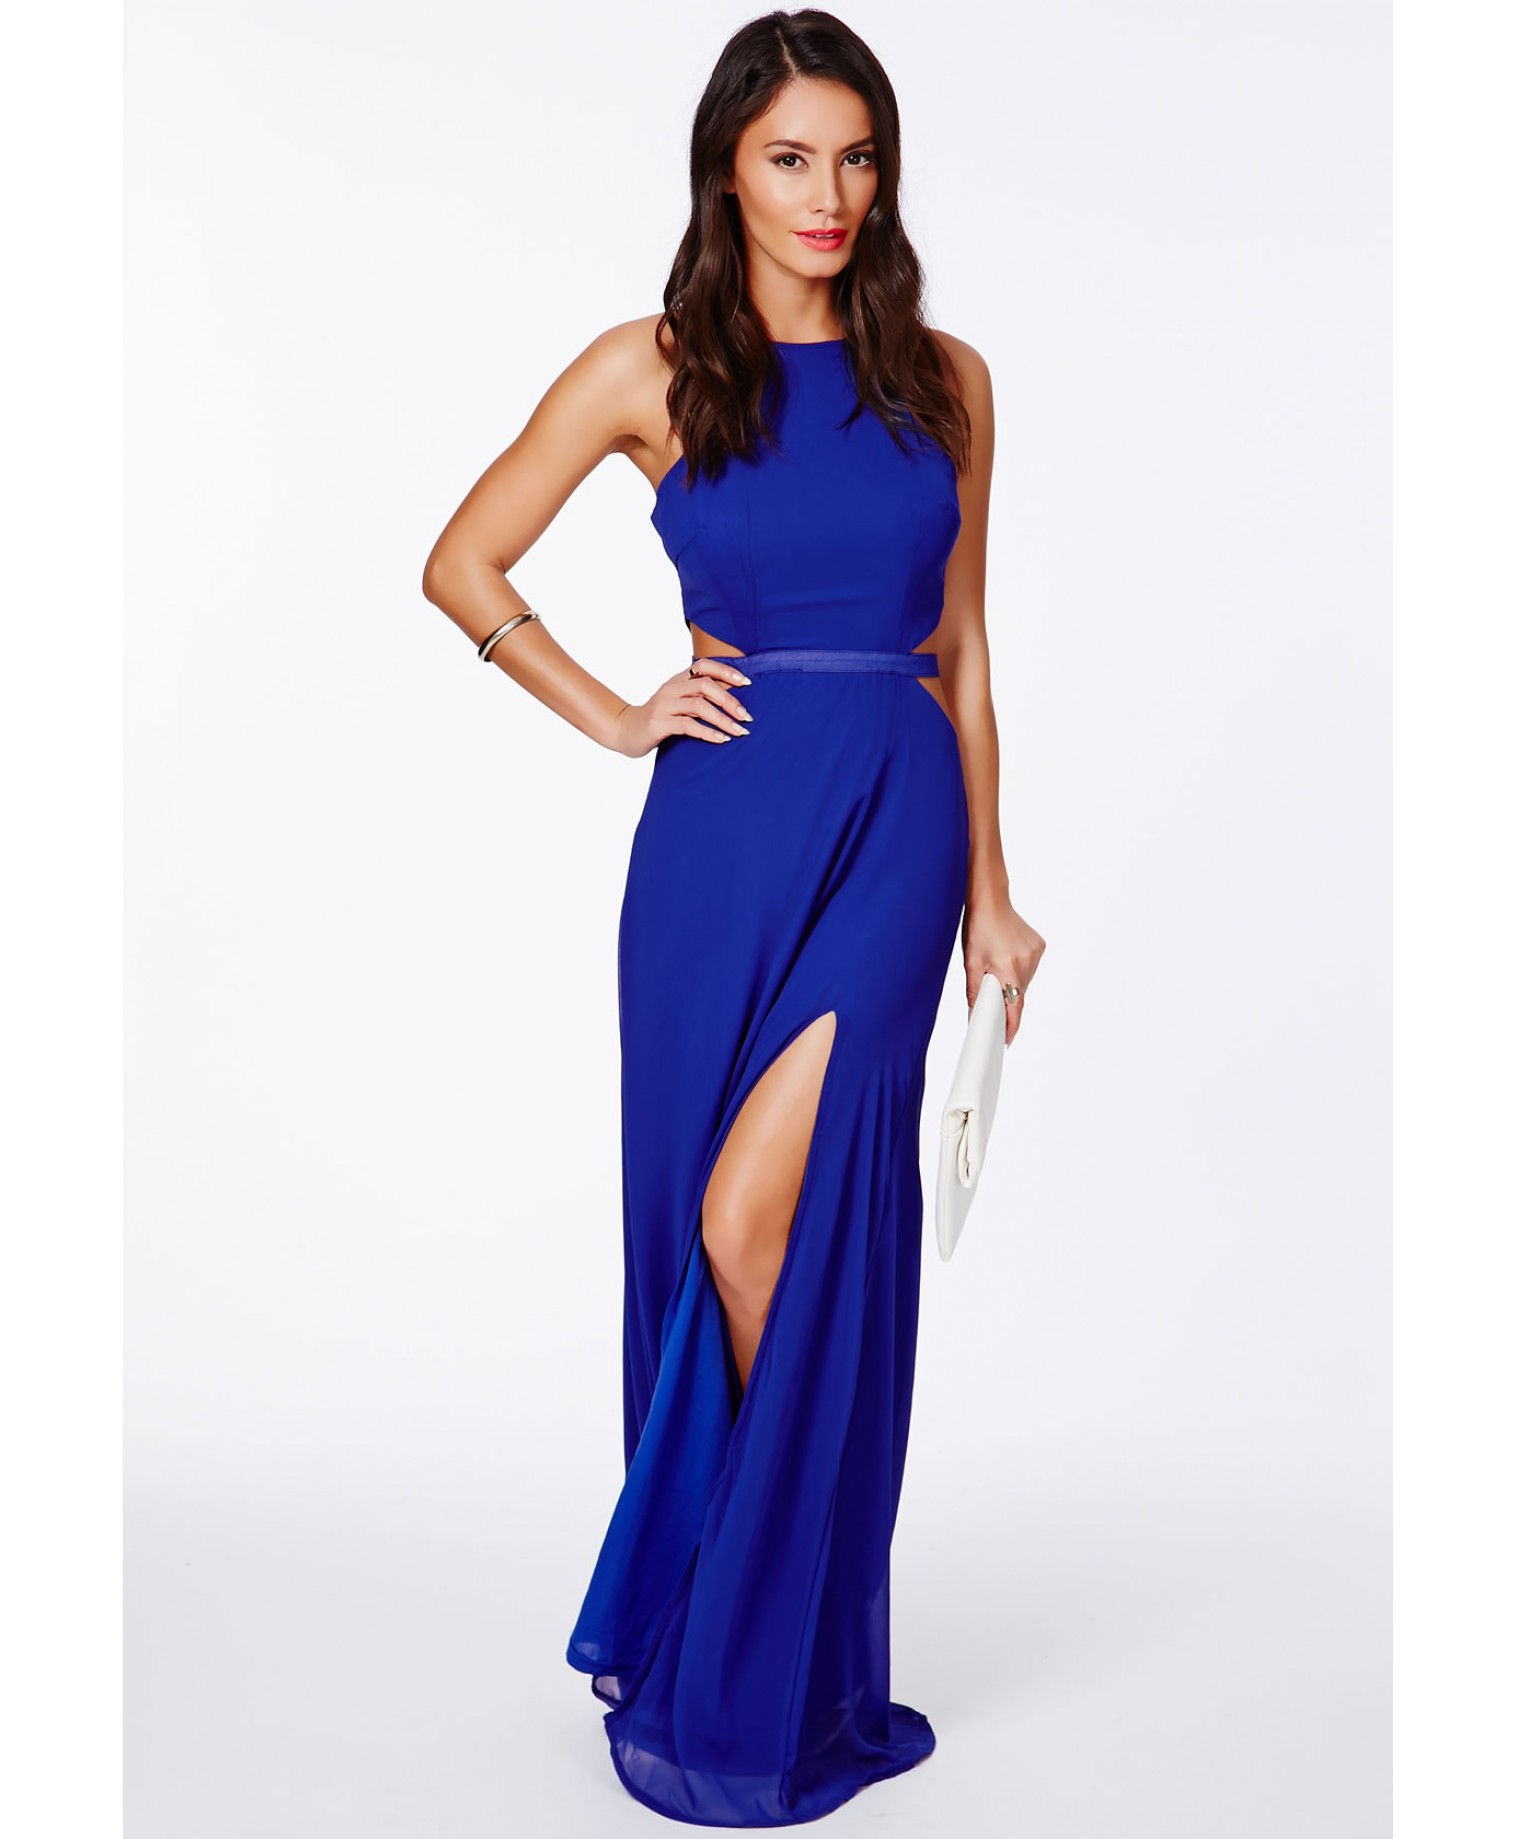 Blue cut out dress